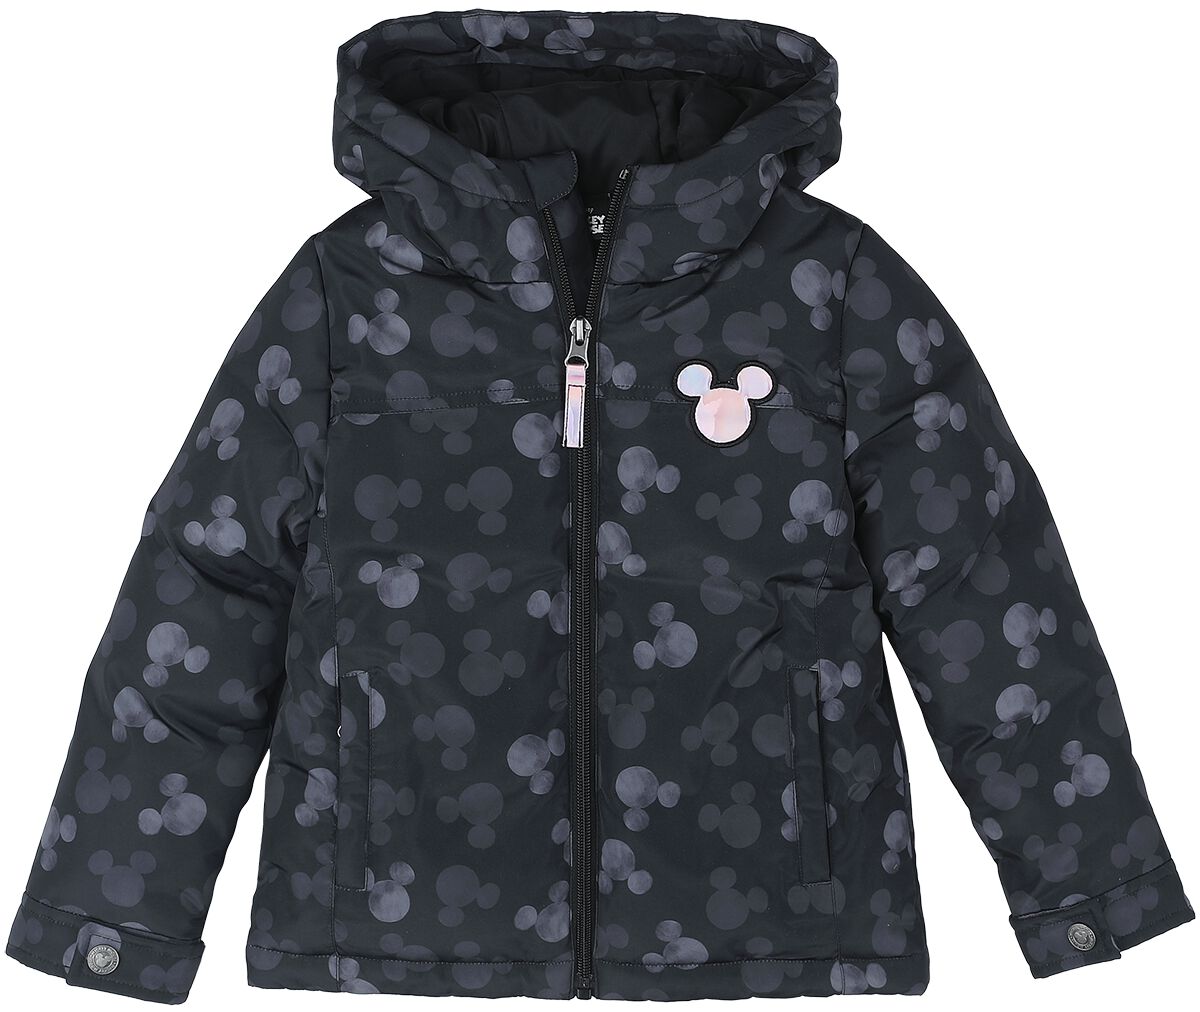 Mickey Mouse - Disney Jacke für Kinder - Allover - für Mädchen - schwarz  - EMP exklusives Merchandise!